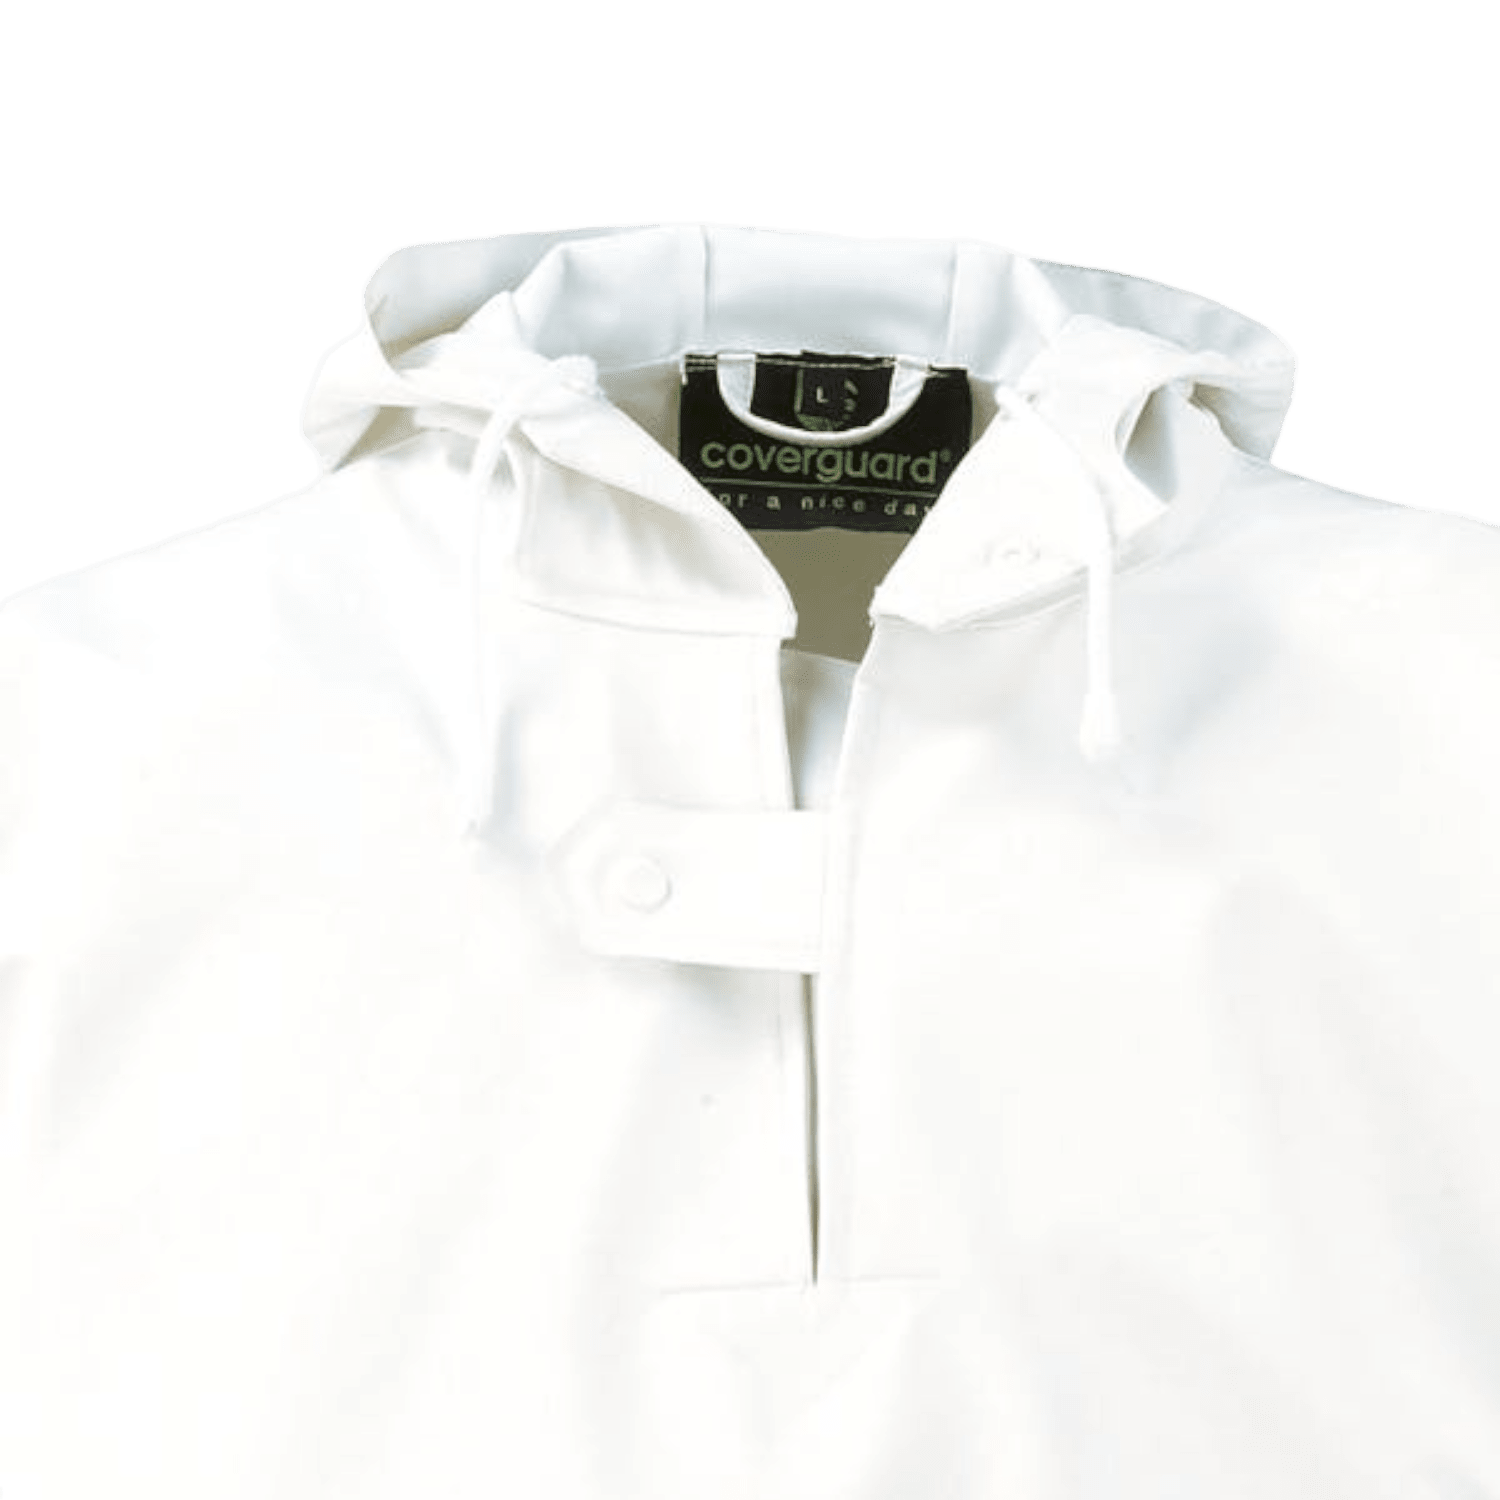 Veste Lorient polyester/polyuréthane imperméable blanc taille XXL photo du produit Back View ZOOM